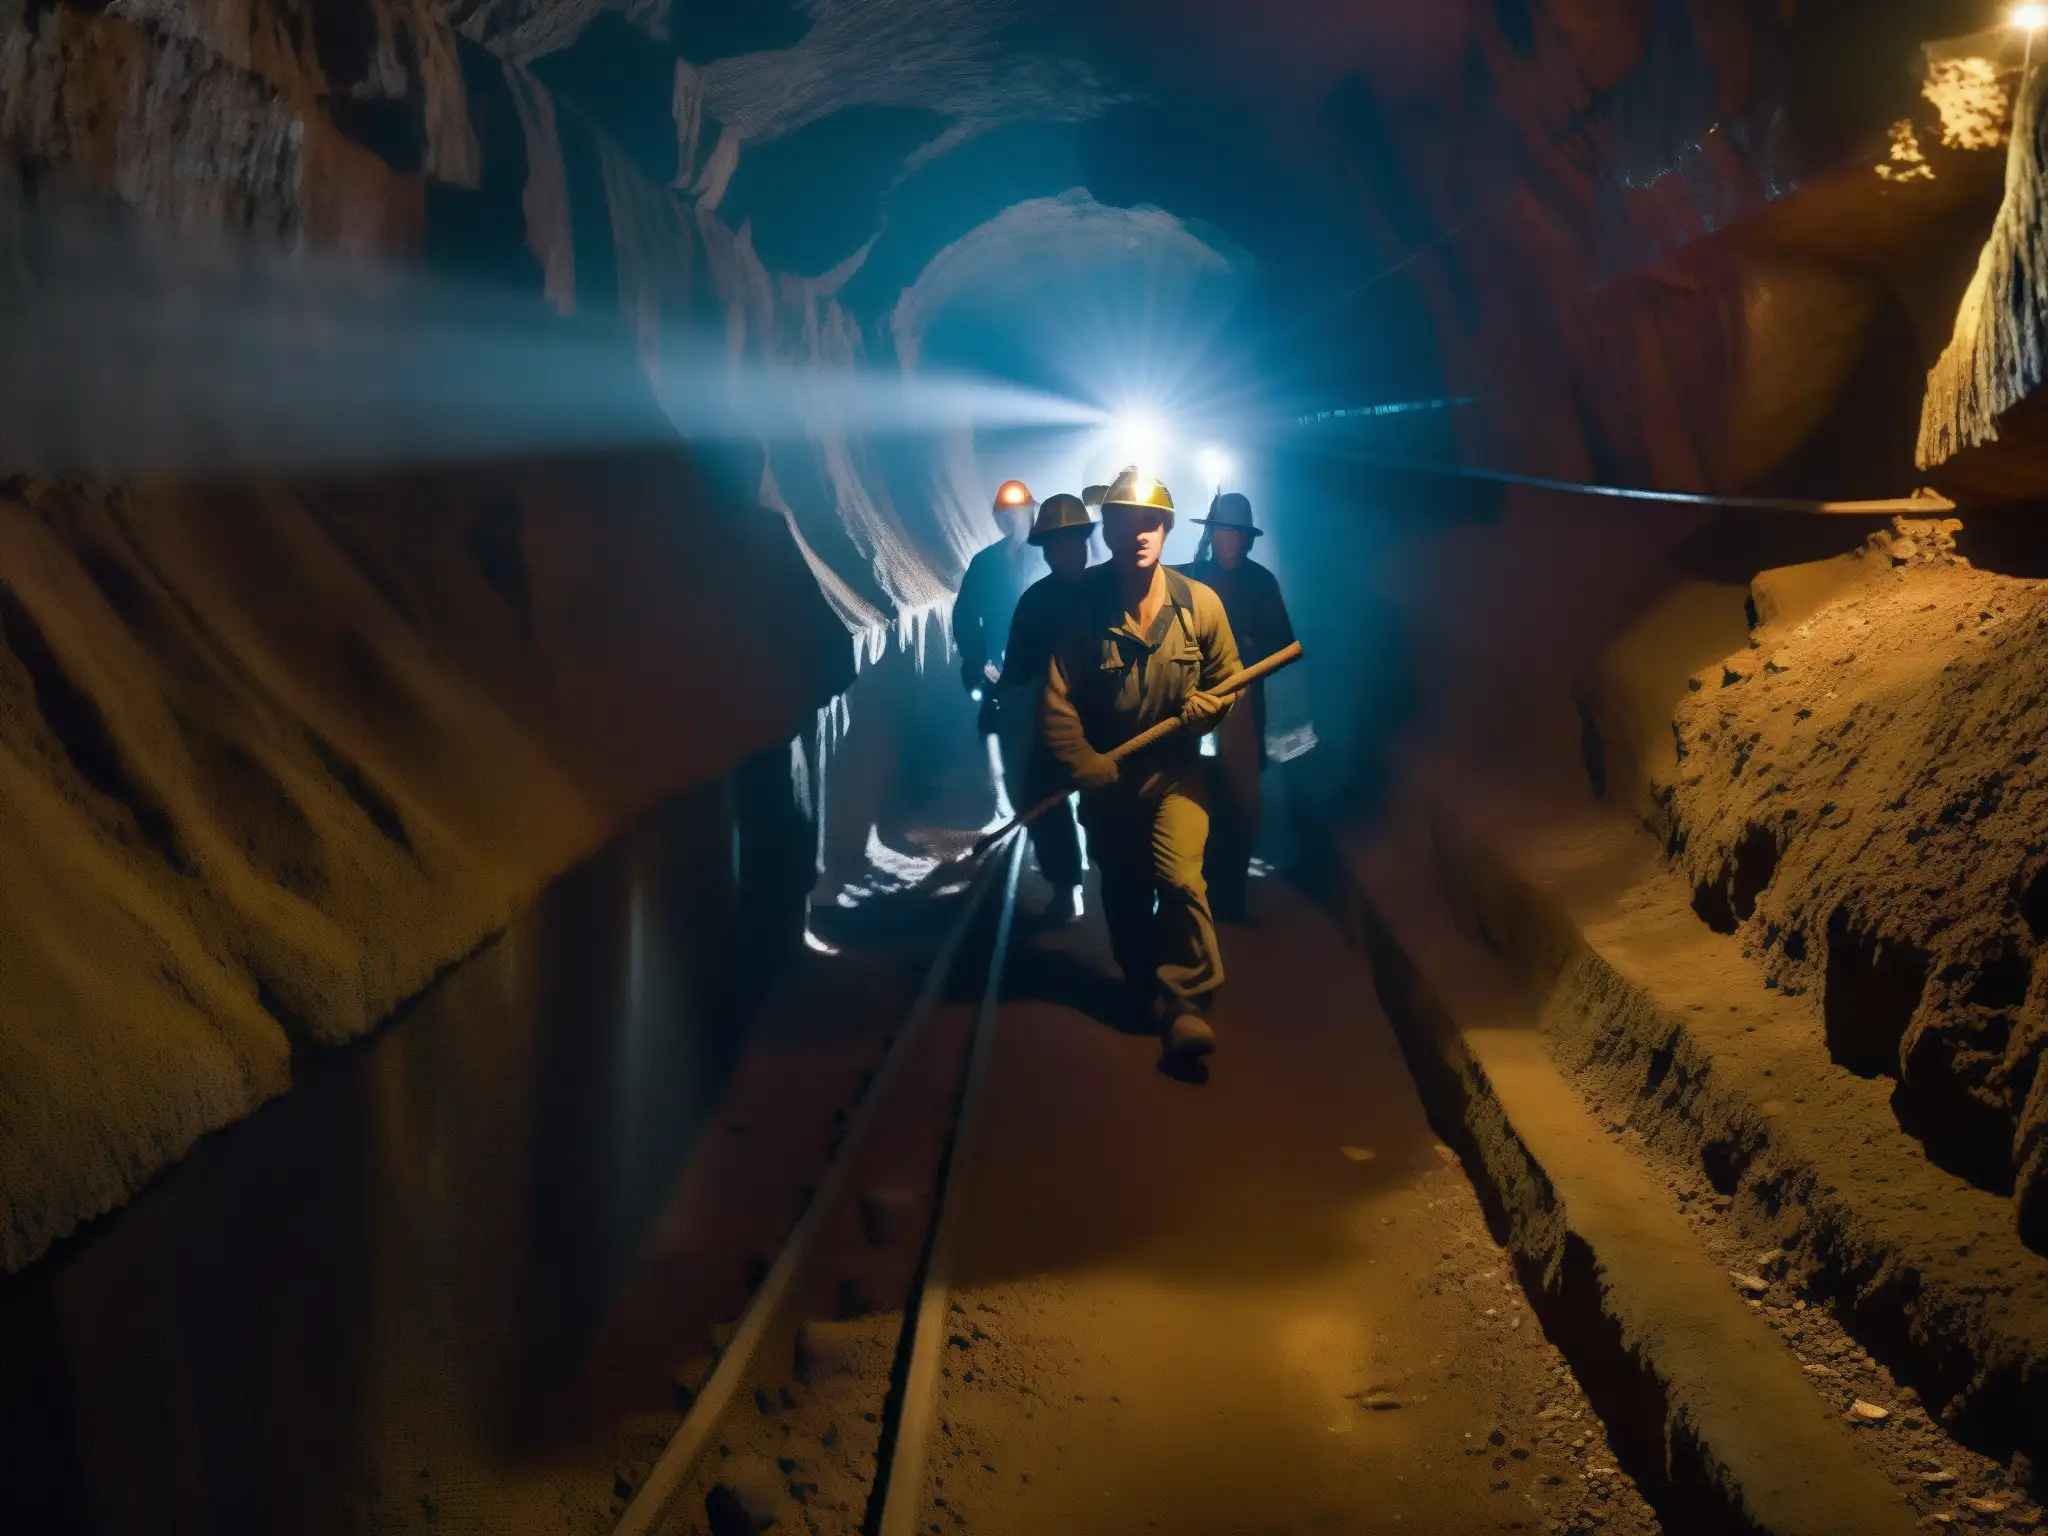 En la penumbra de la mina de Zacatecas, mineros con picos y linternas exploran el túnel, mientras una misteriosa figura los observa